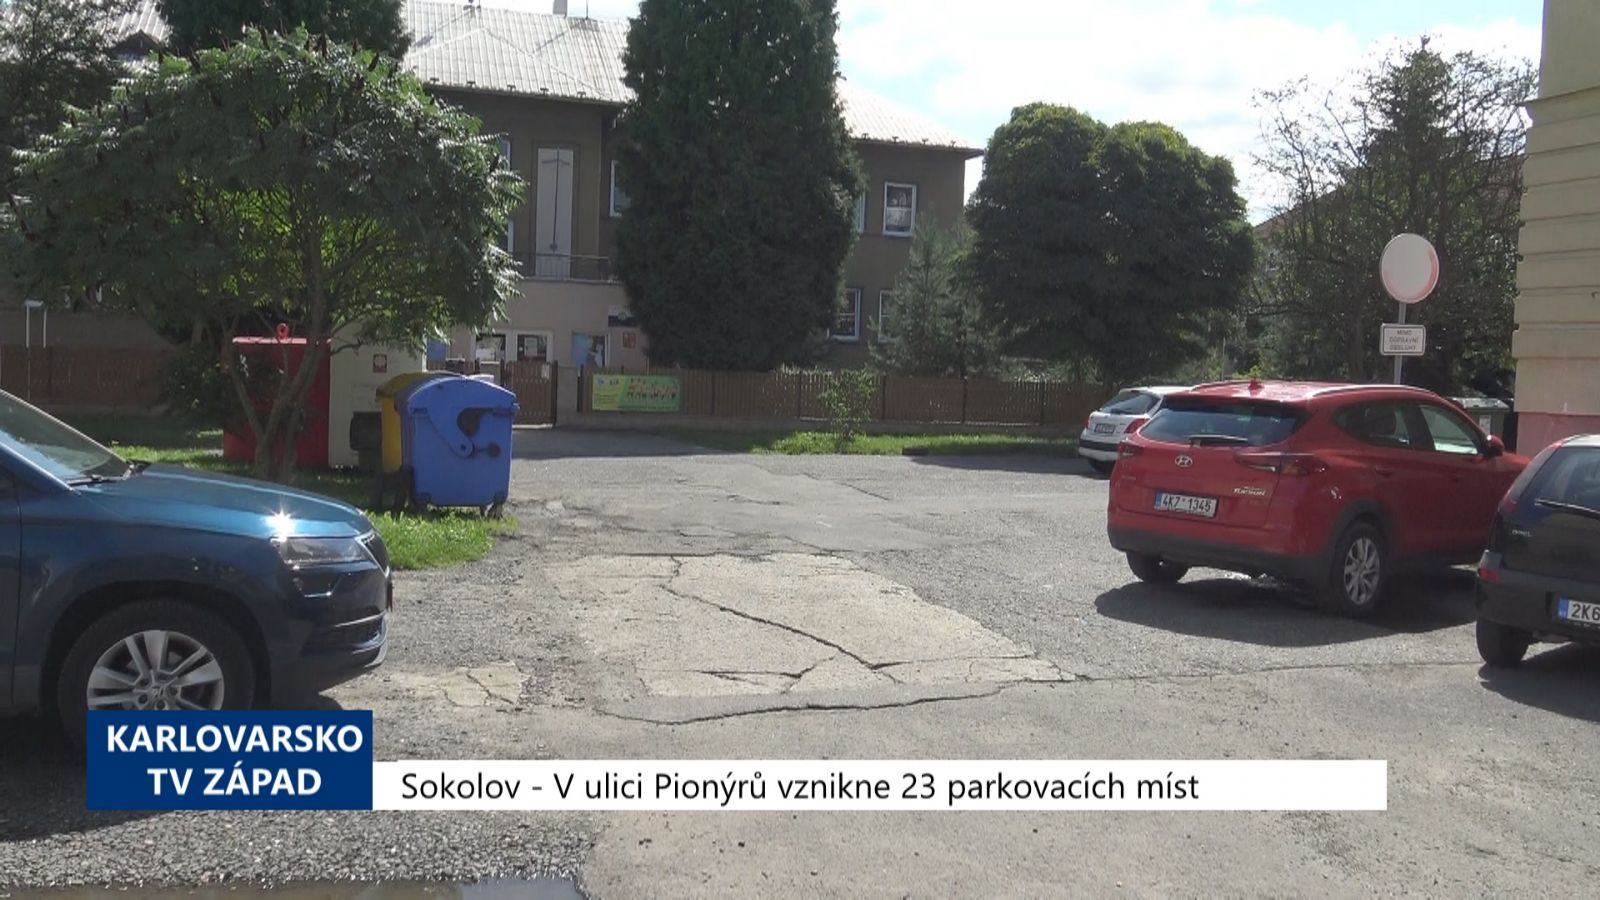 Sokolov: V ulici Pionýrů vznikne 23 parkovacích míst (TV Západ)